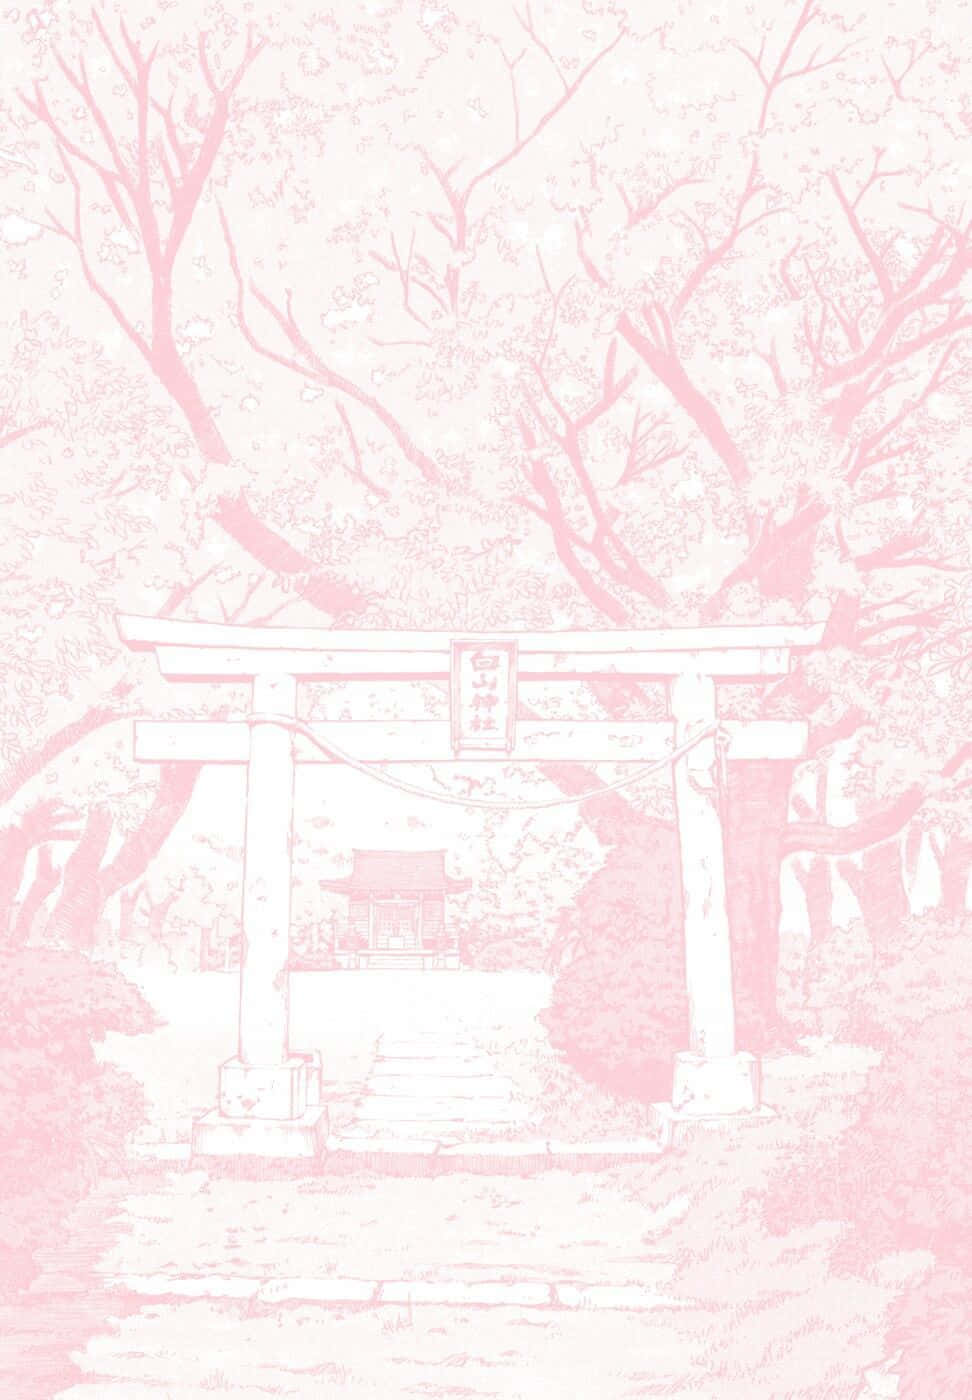 Telefonocon Sfondo Di Anime Estetico Rosa E Torii Gate. Sfondo